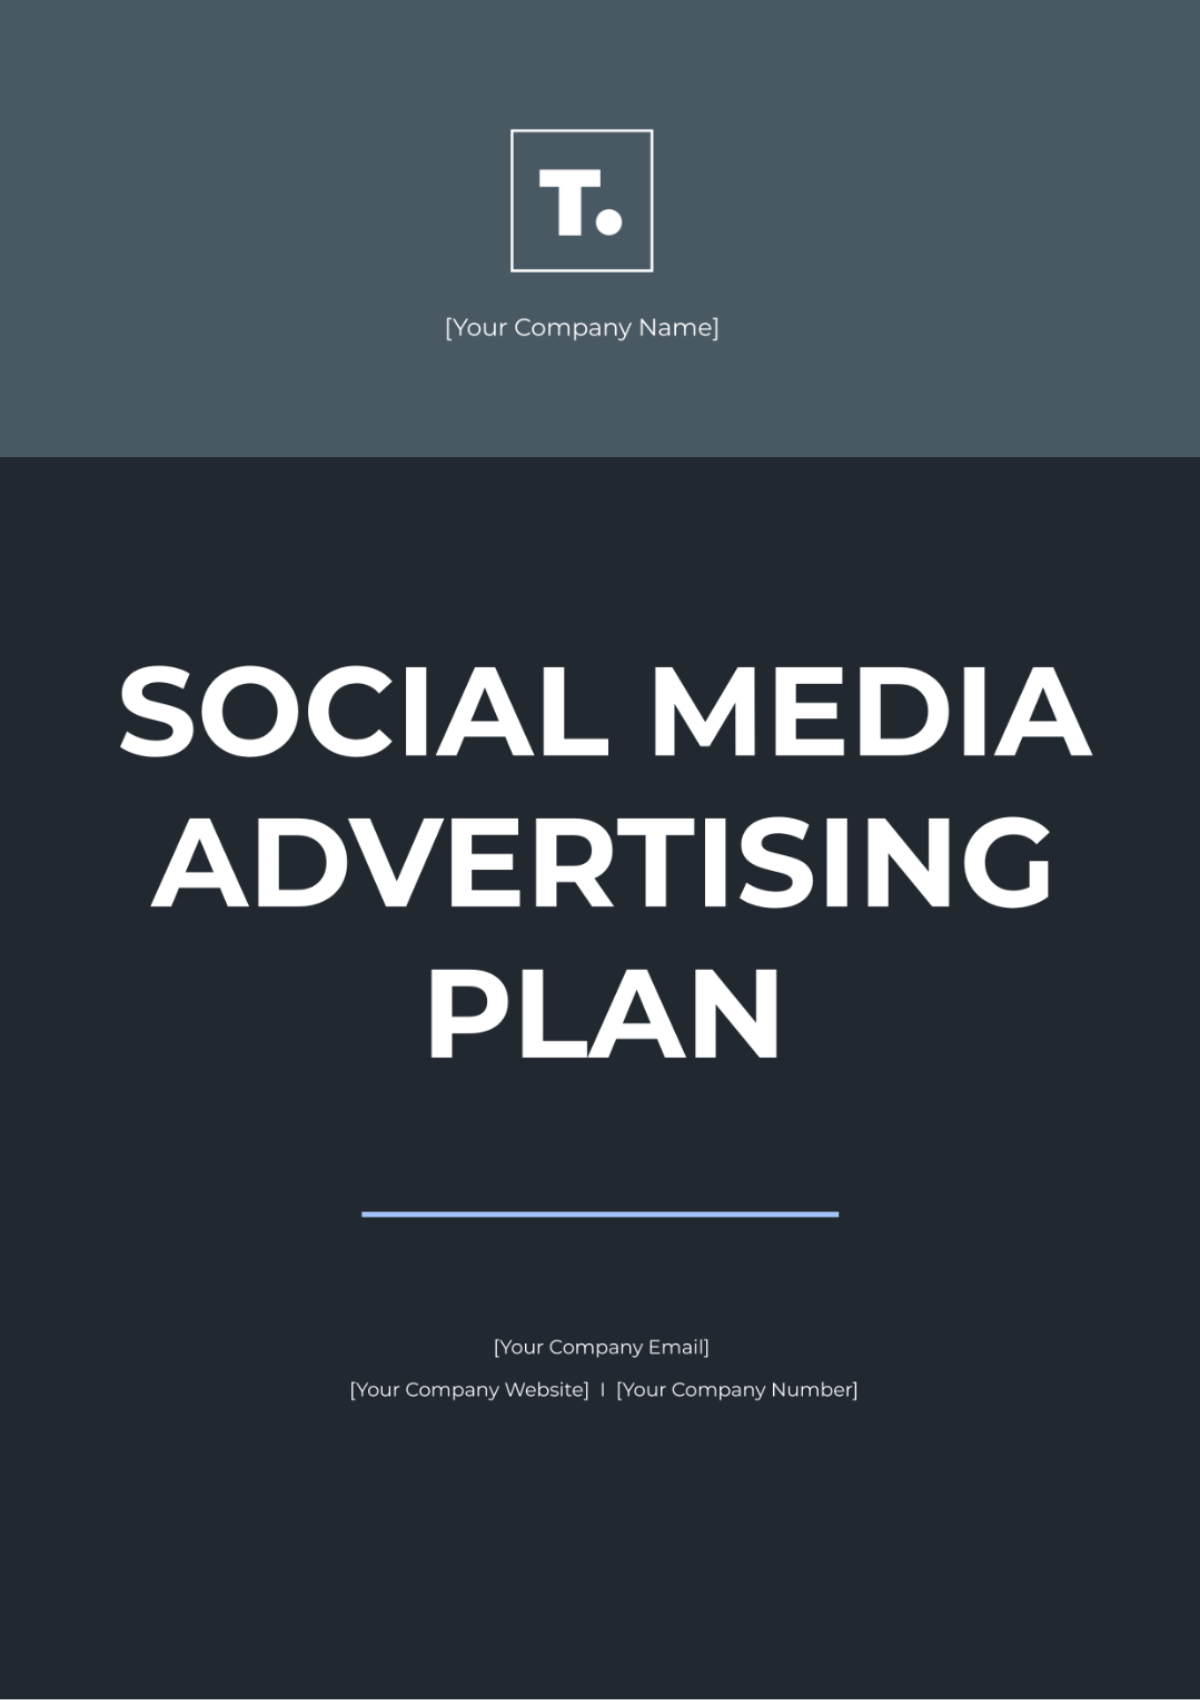 Social Media Advertising Plan Template